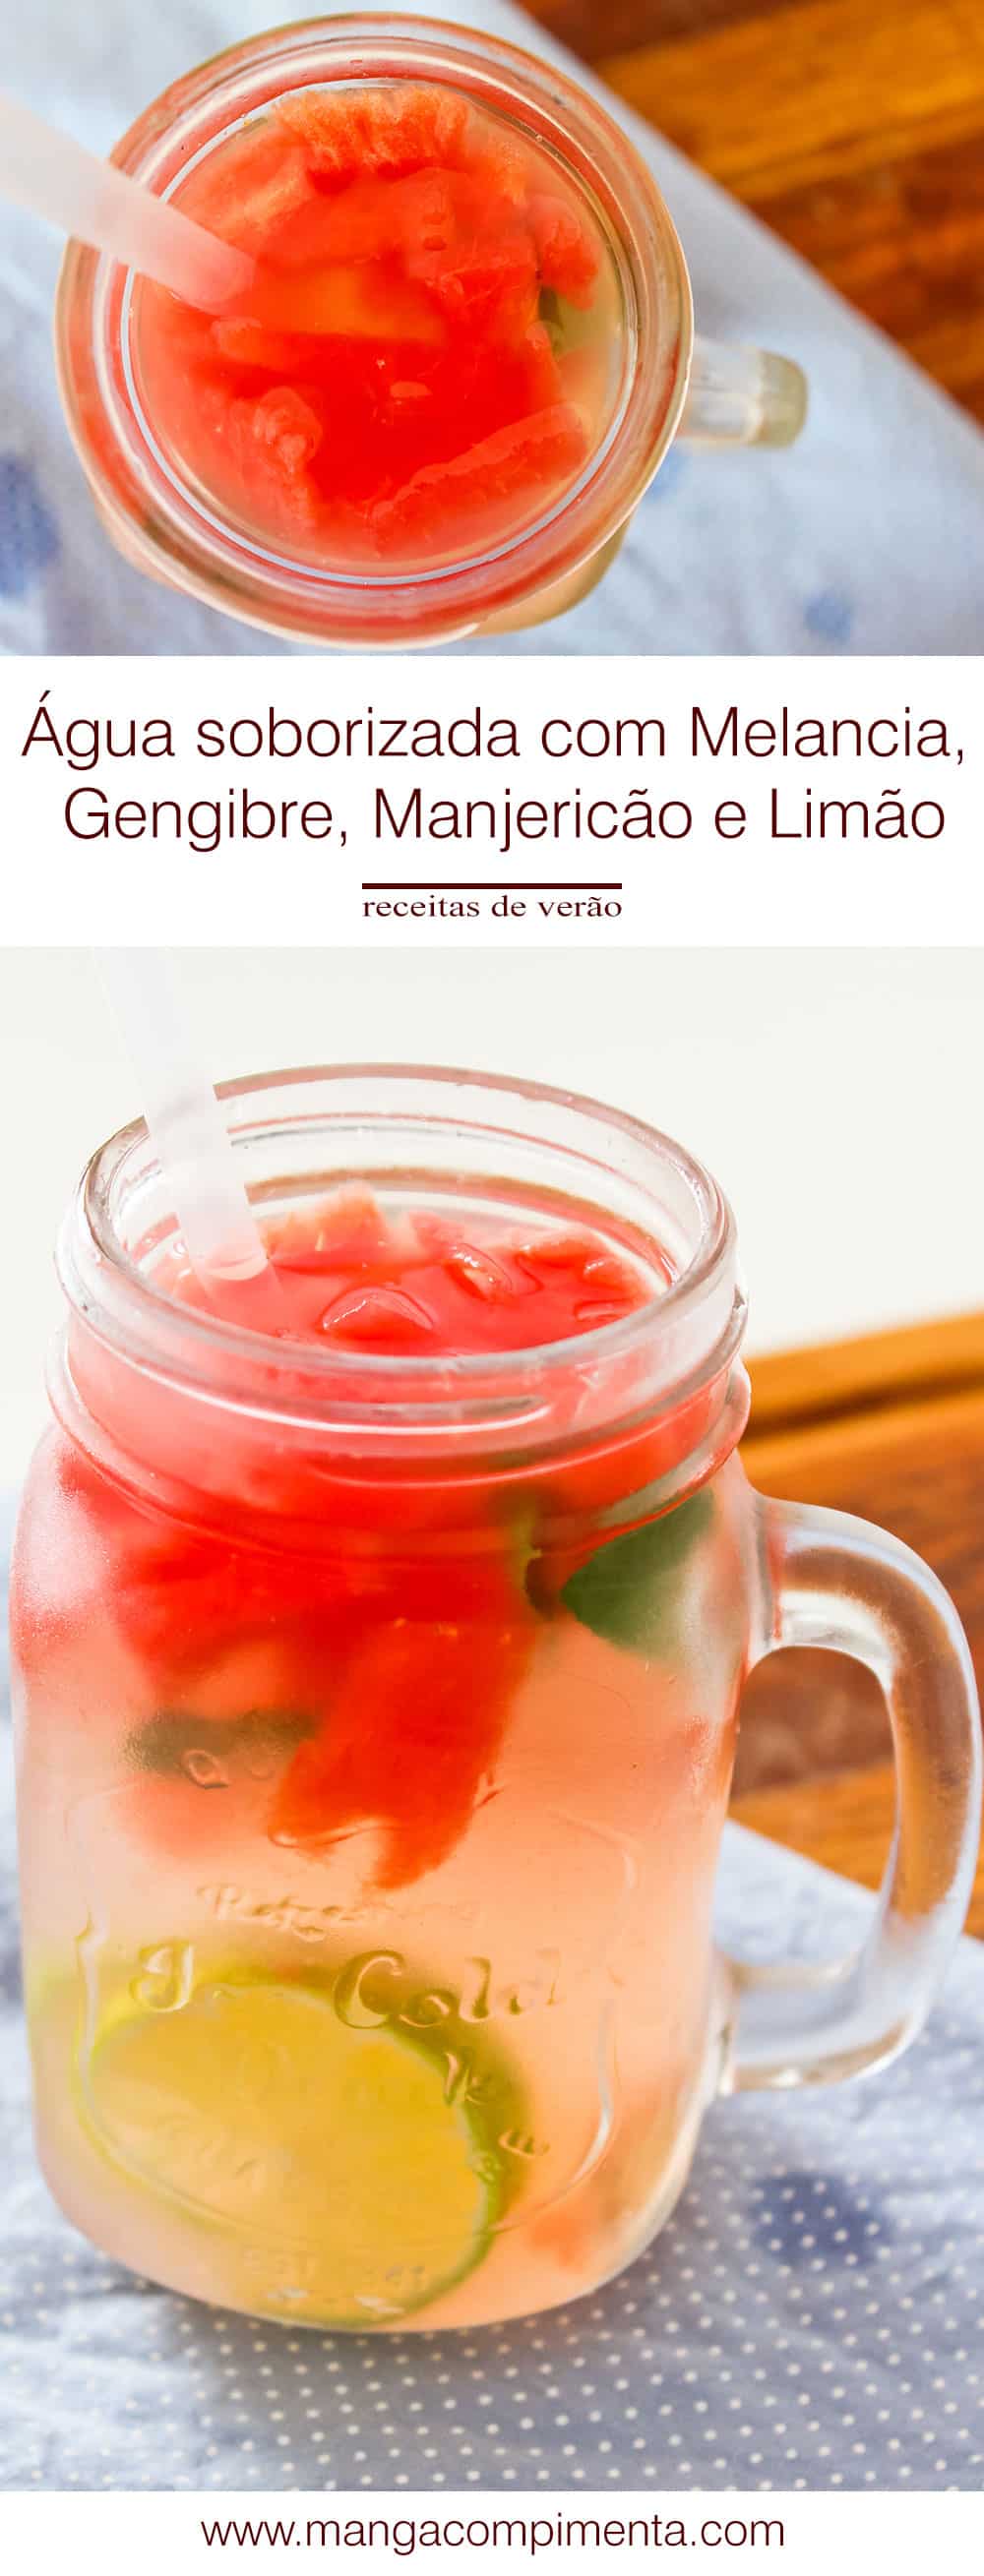 Receita de Água Saborizada com Melancia, Gengibre, Manjericão e Limão - prepare uma bebida deliciosa neste verão. 